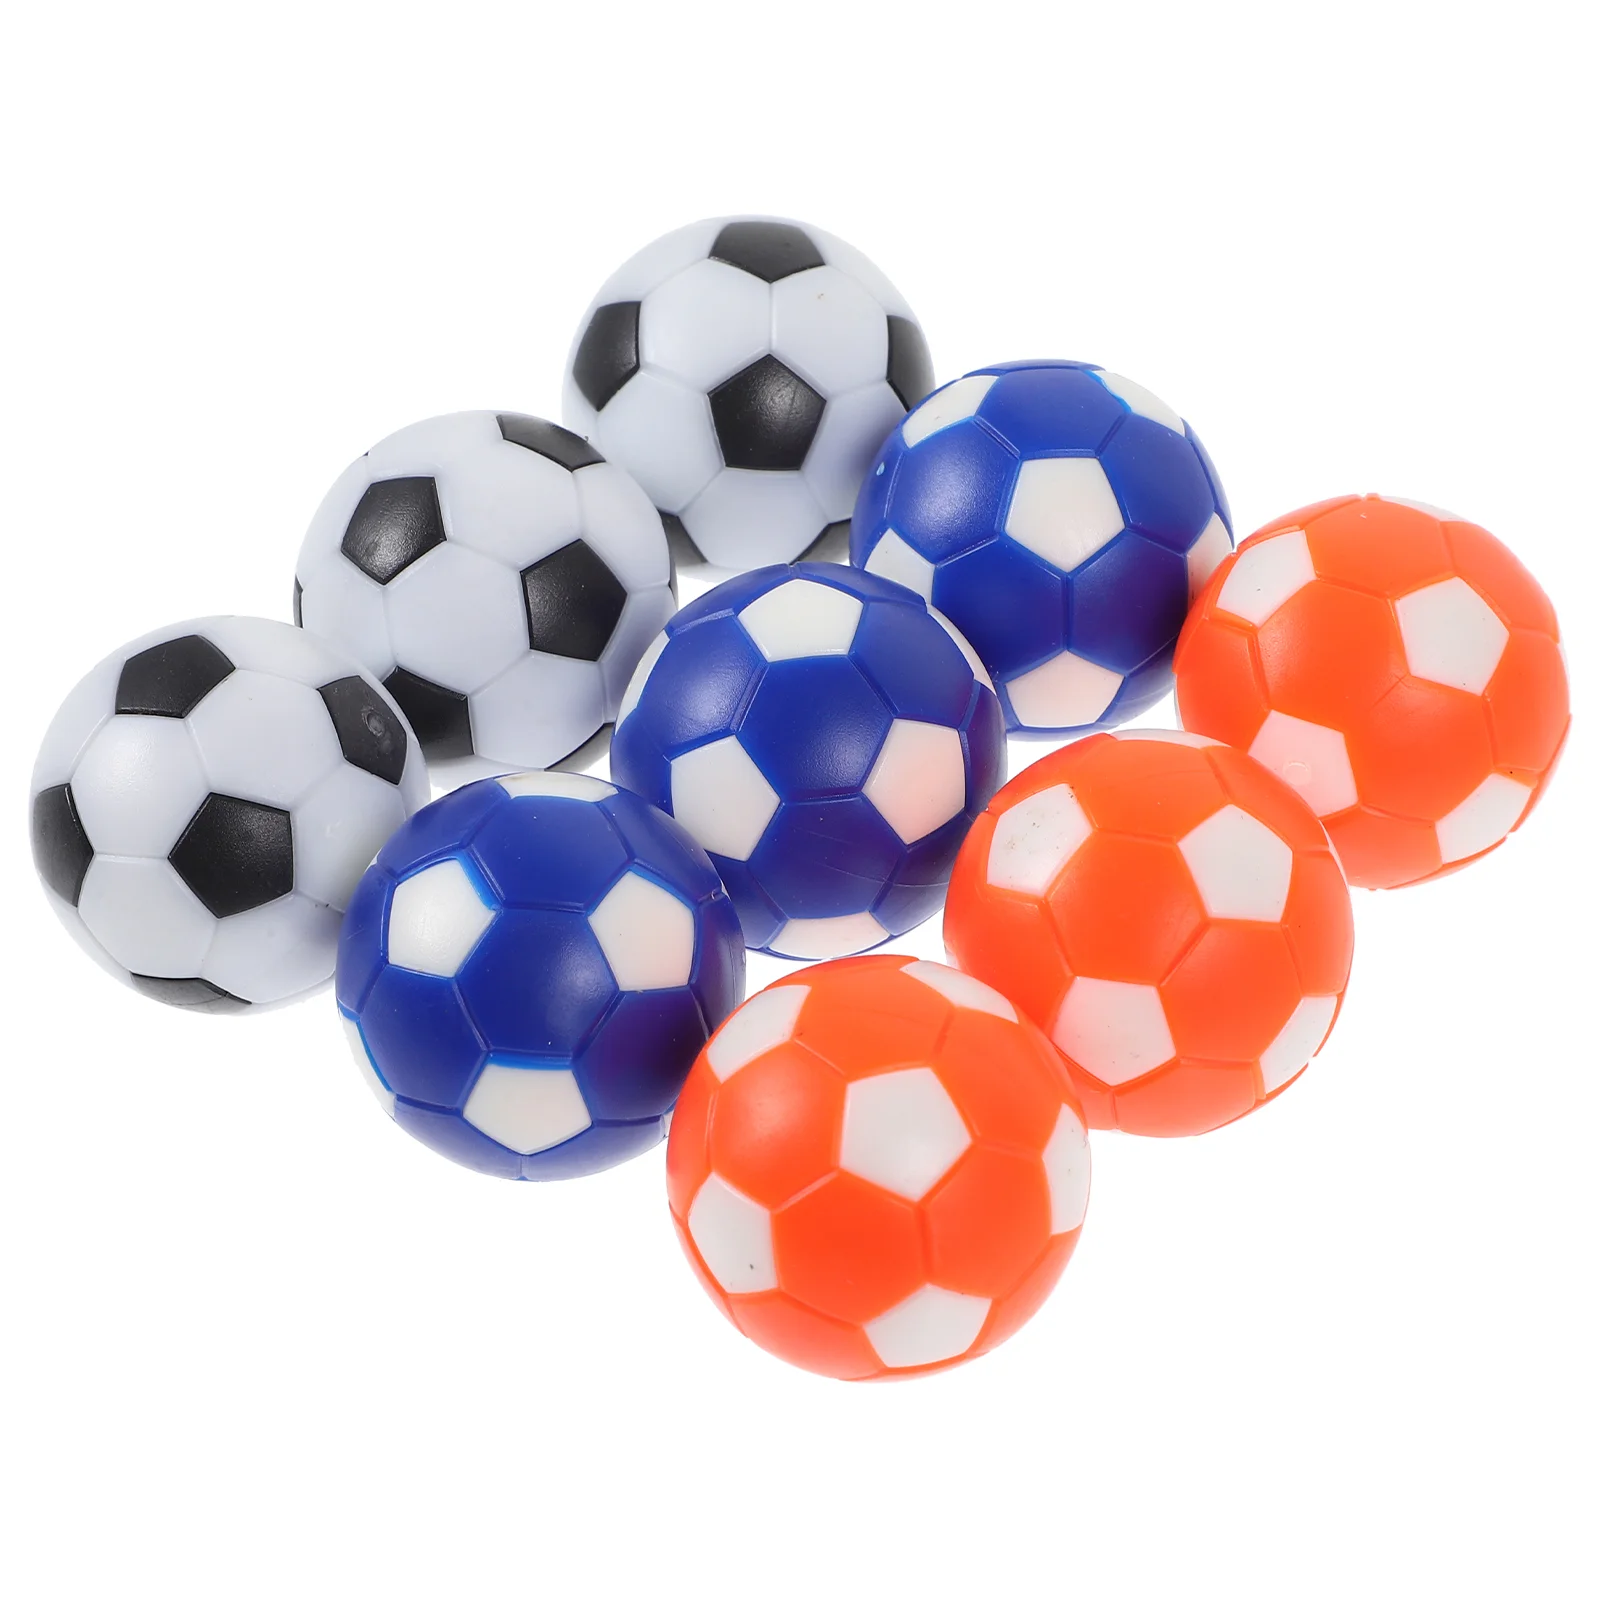 Аксессуары для детского мини-настольного футбола, цветная модель 28 мм, принадлежности для игры в настольный футбол, Футбольные мячи, Стол для футбола, Новинка